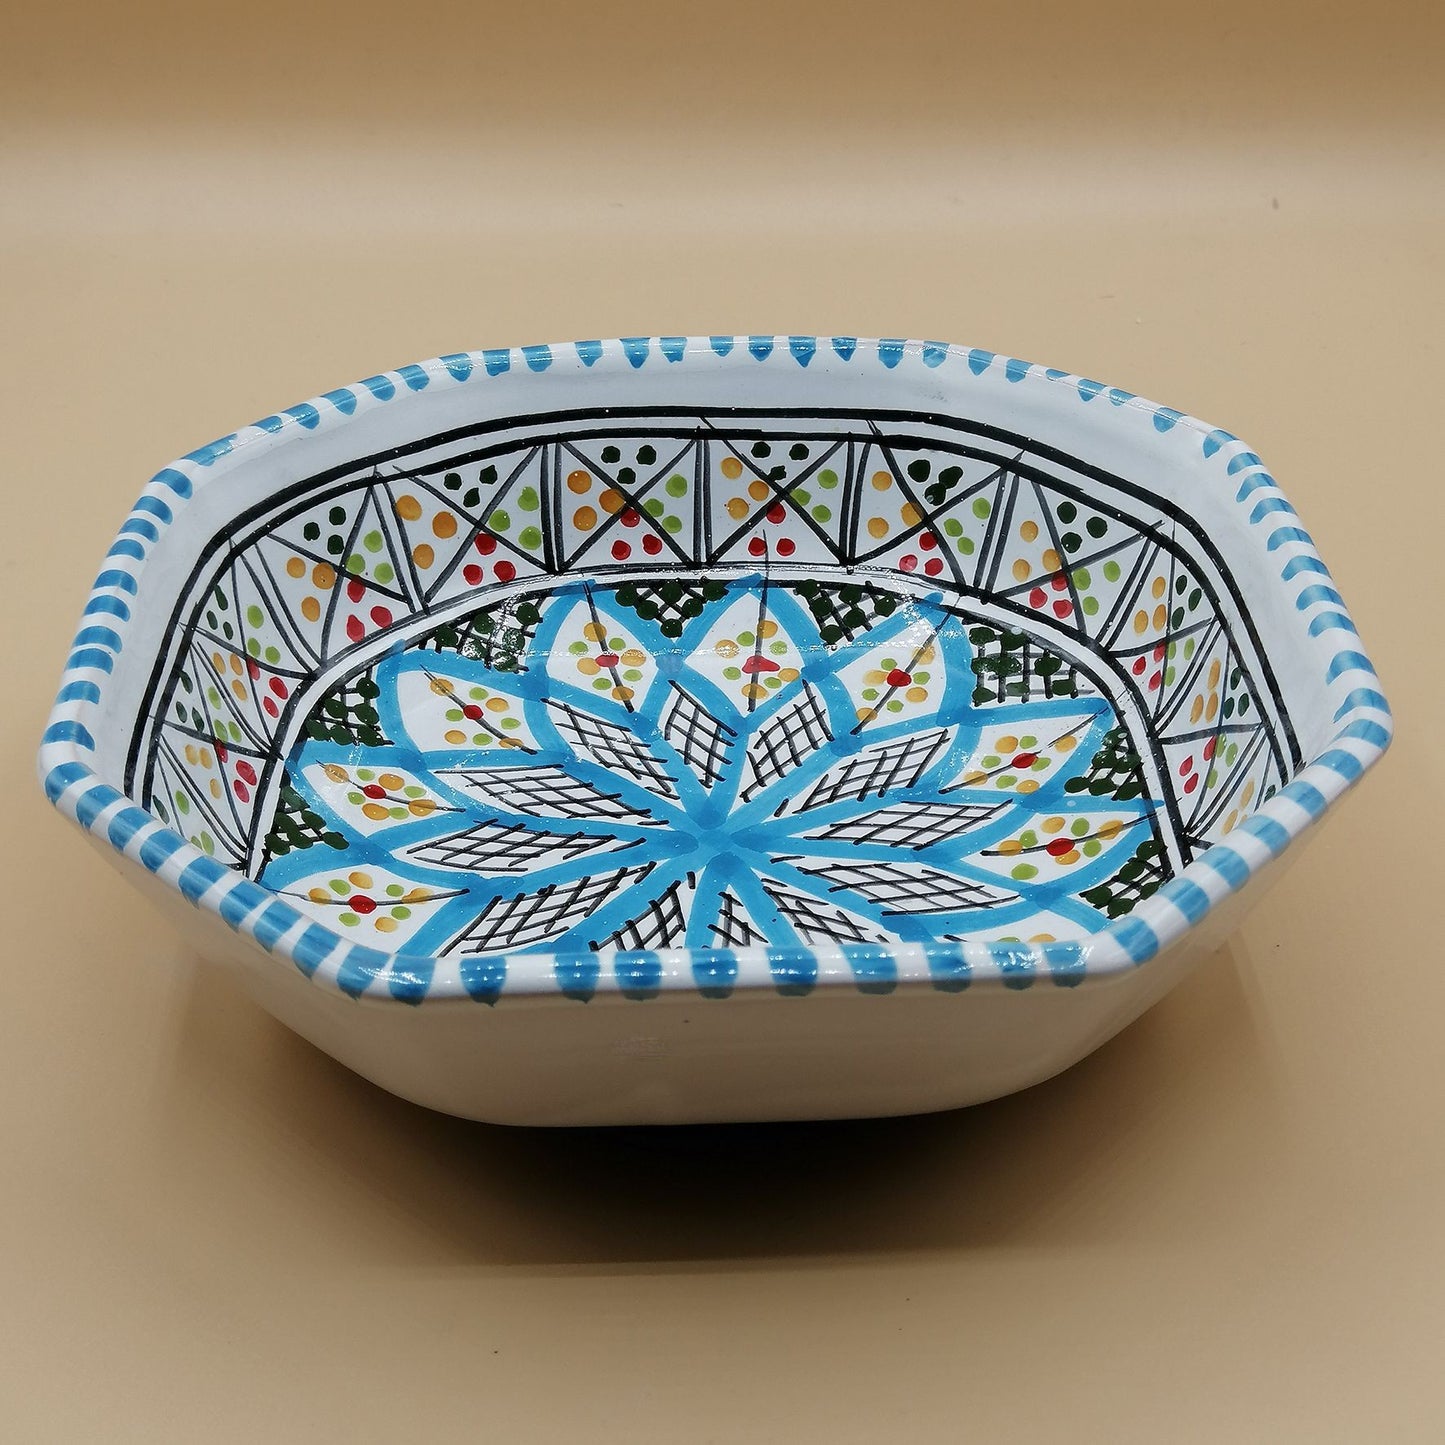 Voorgerecht bowl sauzen bijgerechten Tunesisch keramiek 0611201120